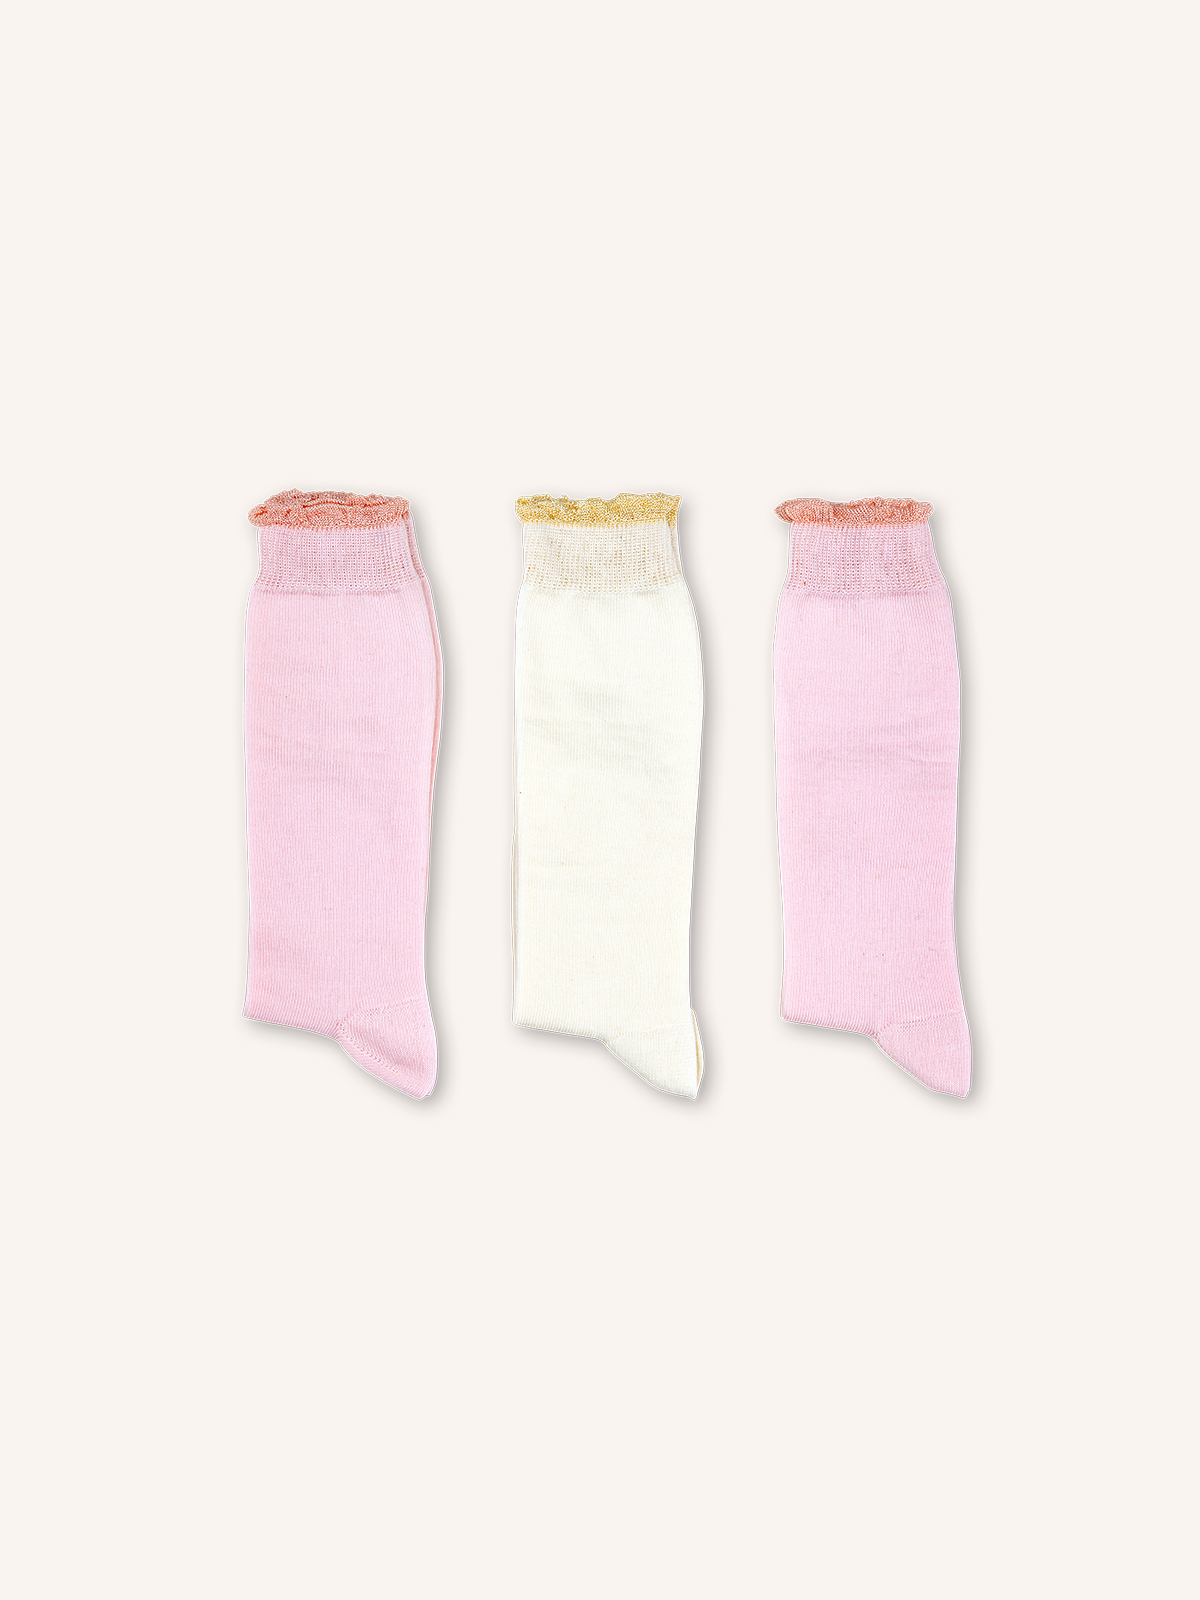 Long Cotton Socks for Girl | Plain Color | Pack of 3 Pairs | Viki B